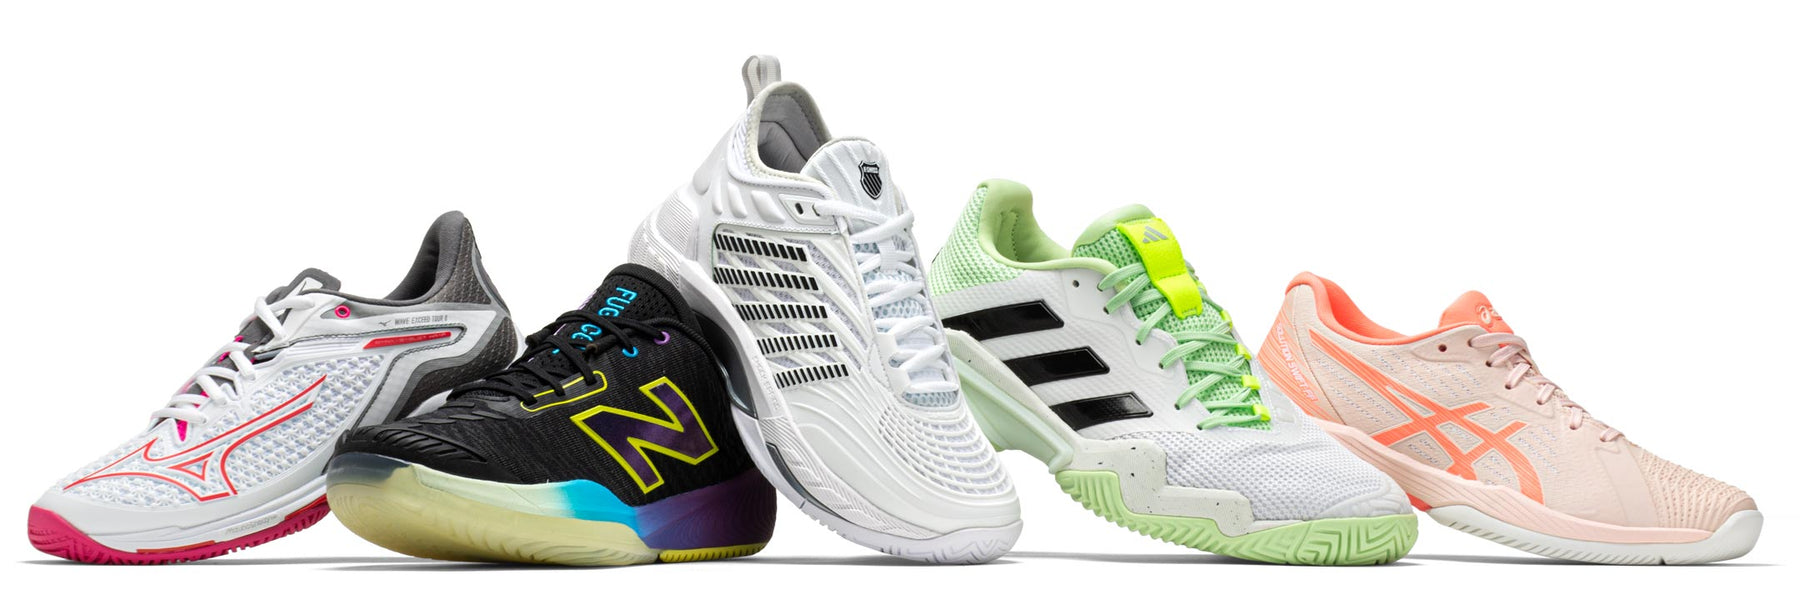 mizuno newbalance kswiss adidas asics tennis shoes hero